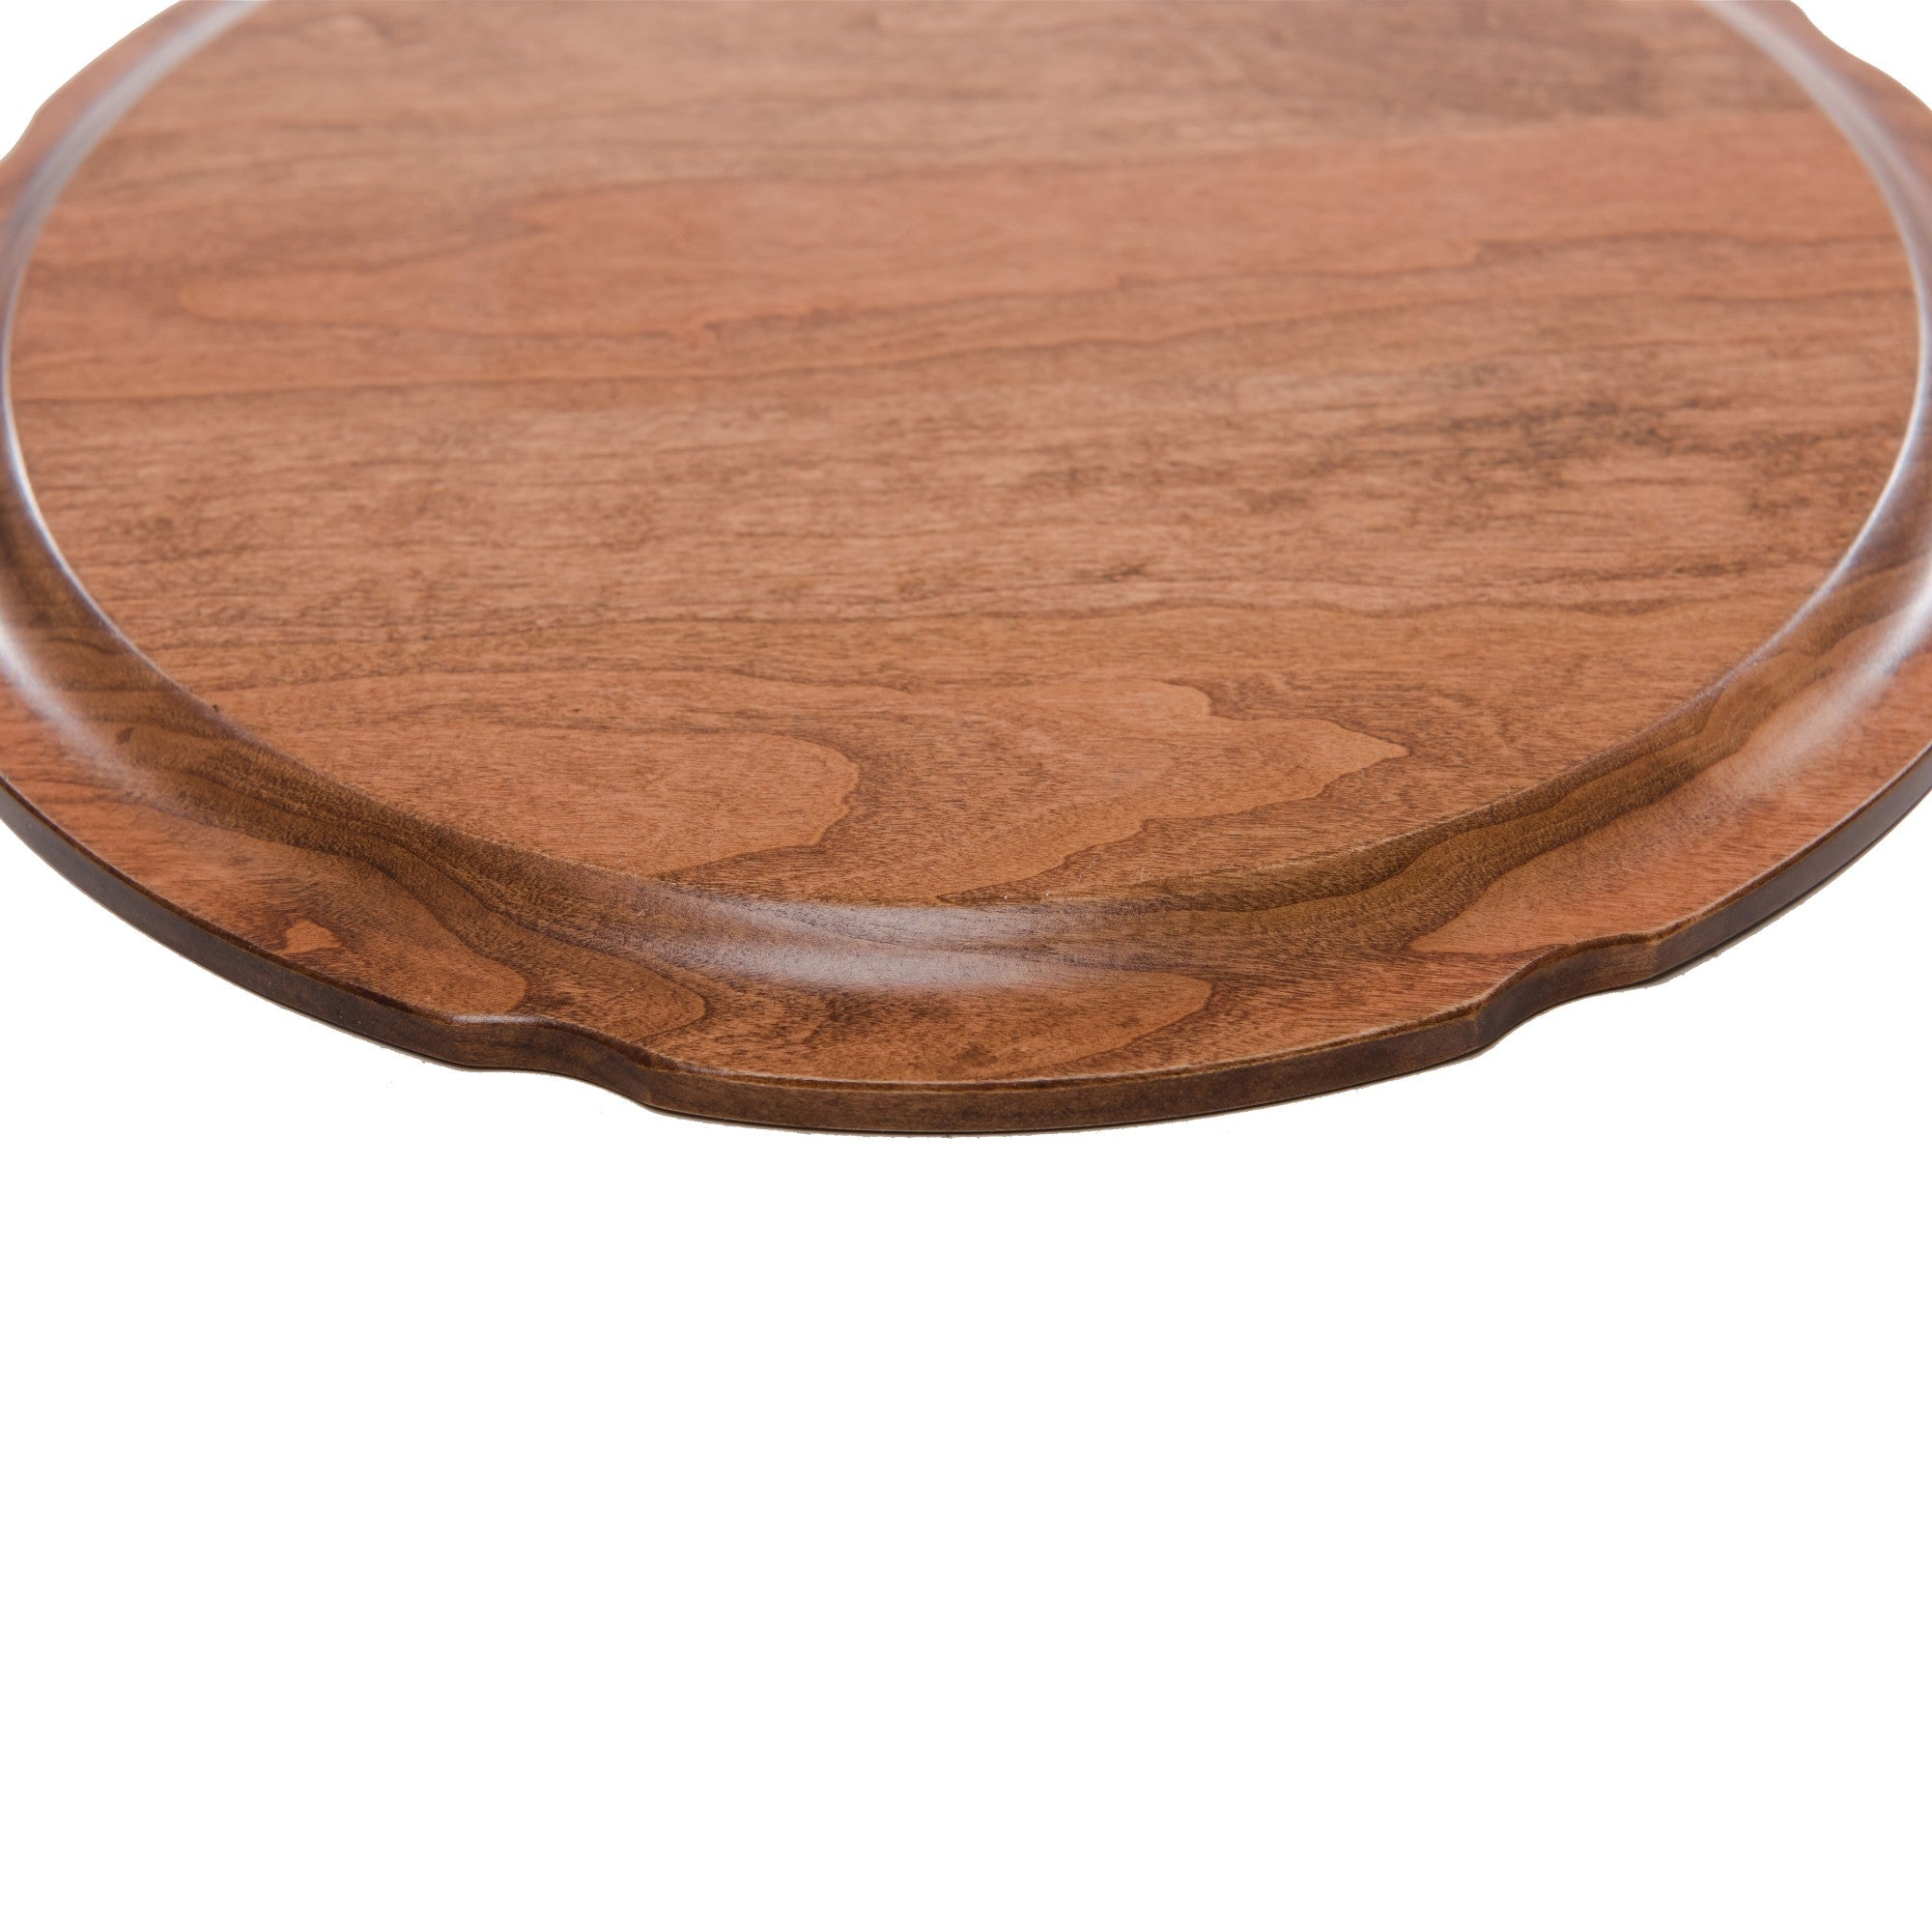 Pet Memorial Wooden Plate Décor - Gone But Not Forgotten